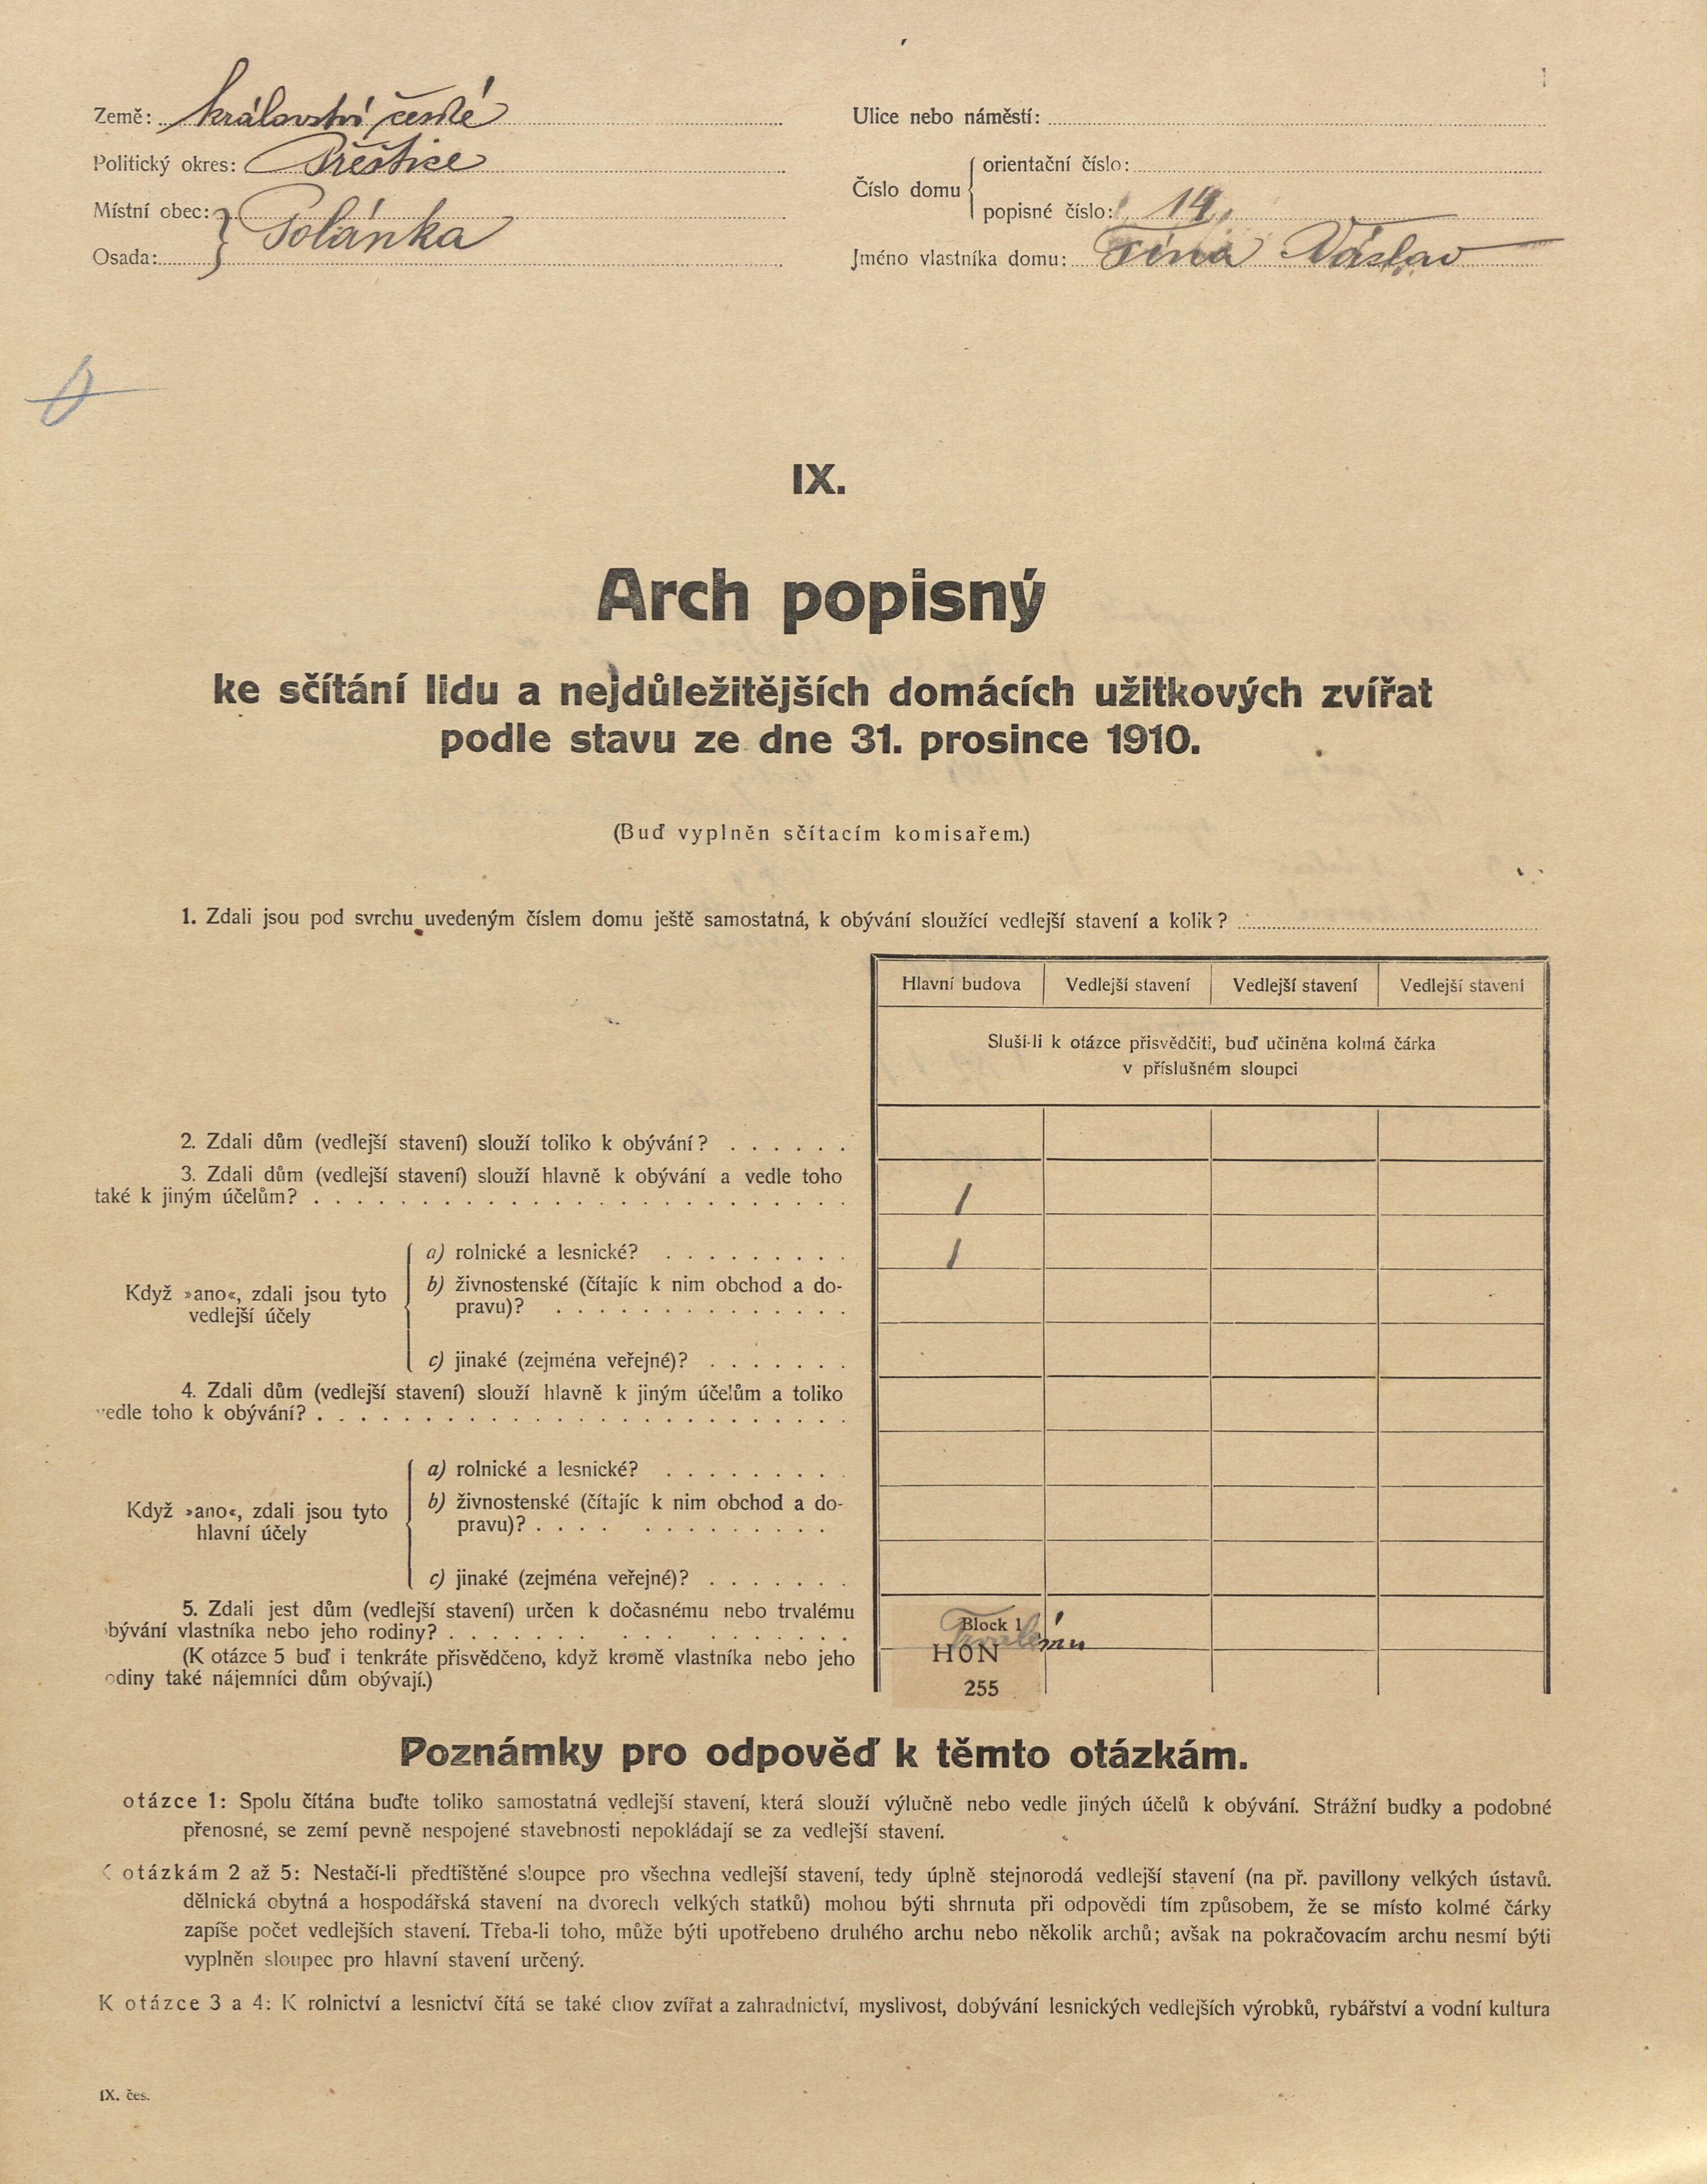 1. soap-pj_00302_census-1910-polanka-cp014_0010